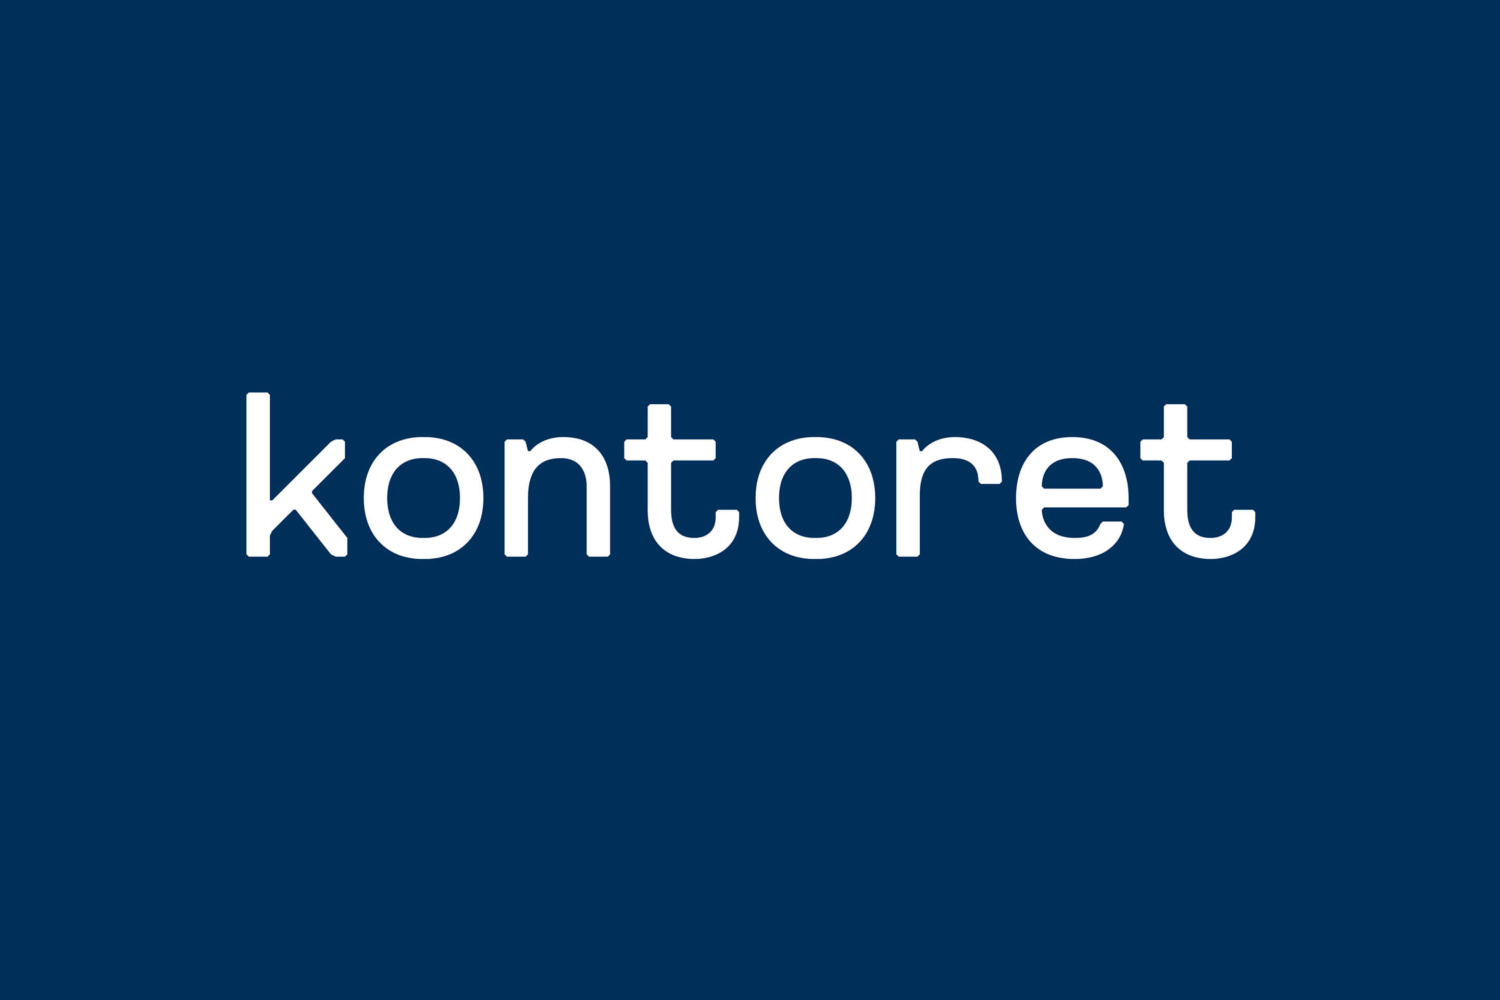 Creative Logotype Gallery & Inspiration: Kontoret by Werklig, Finland